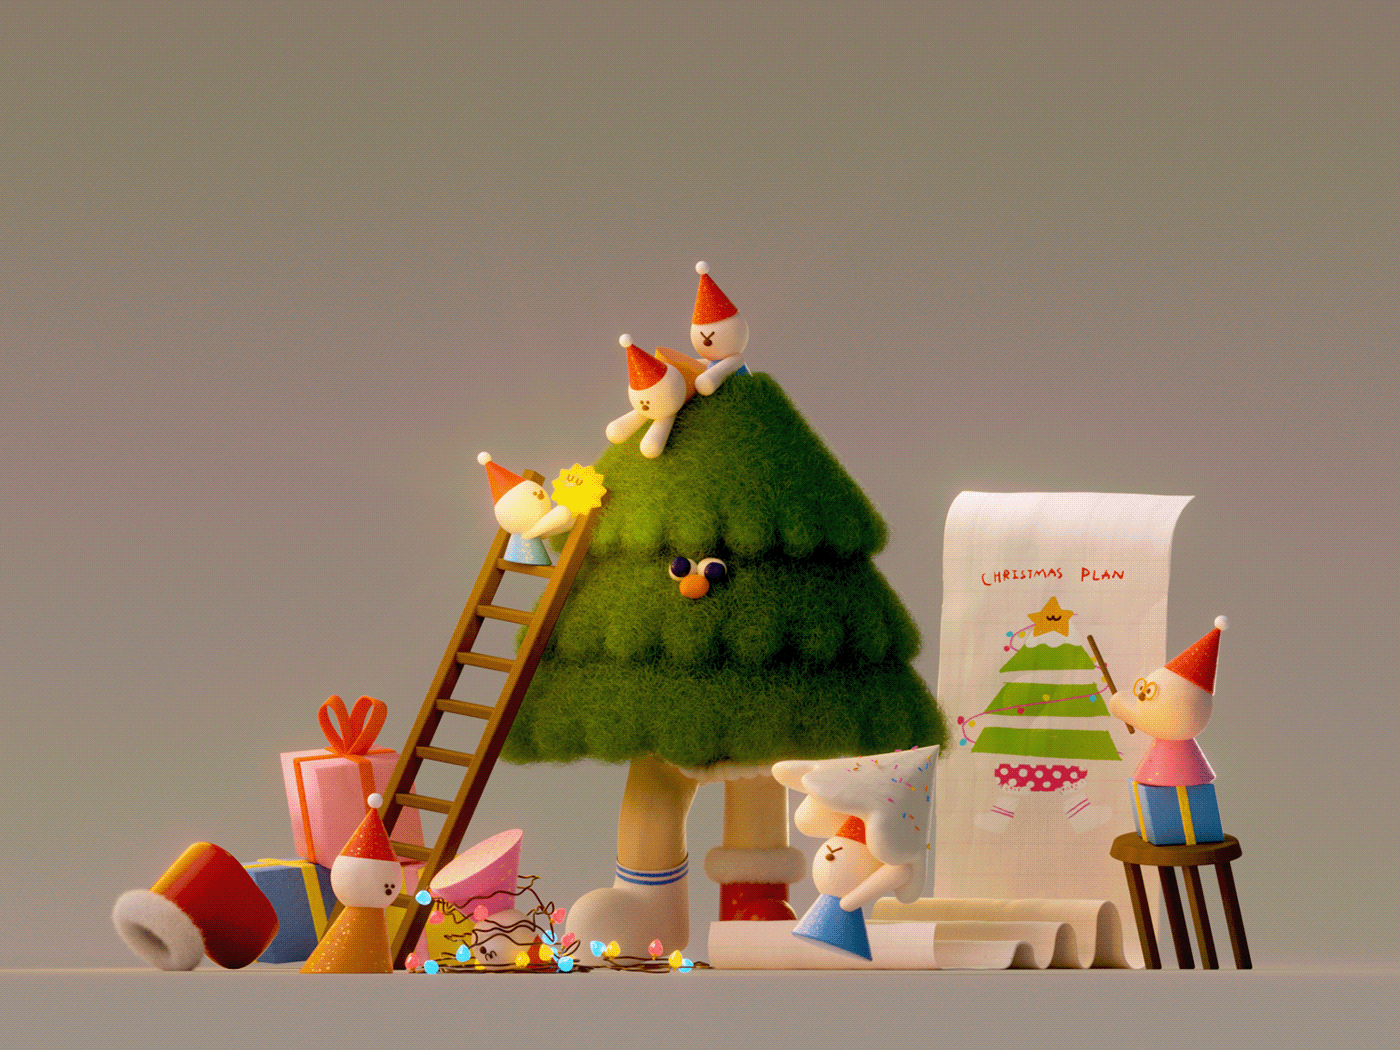 Christmas ILLUSTRATION  3D 3D illustration cinema 4d after effects Octane Render graphic design  Digital Art 